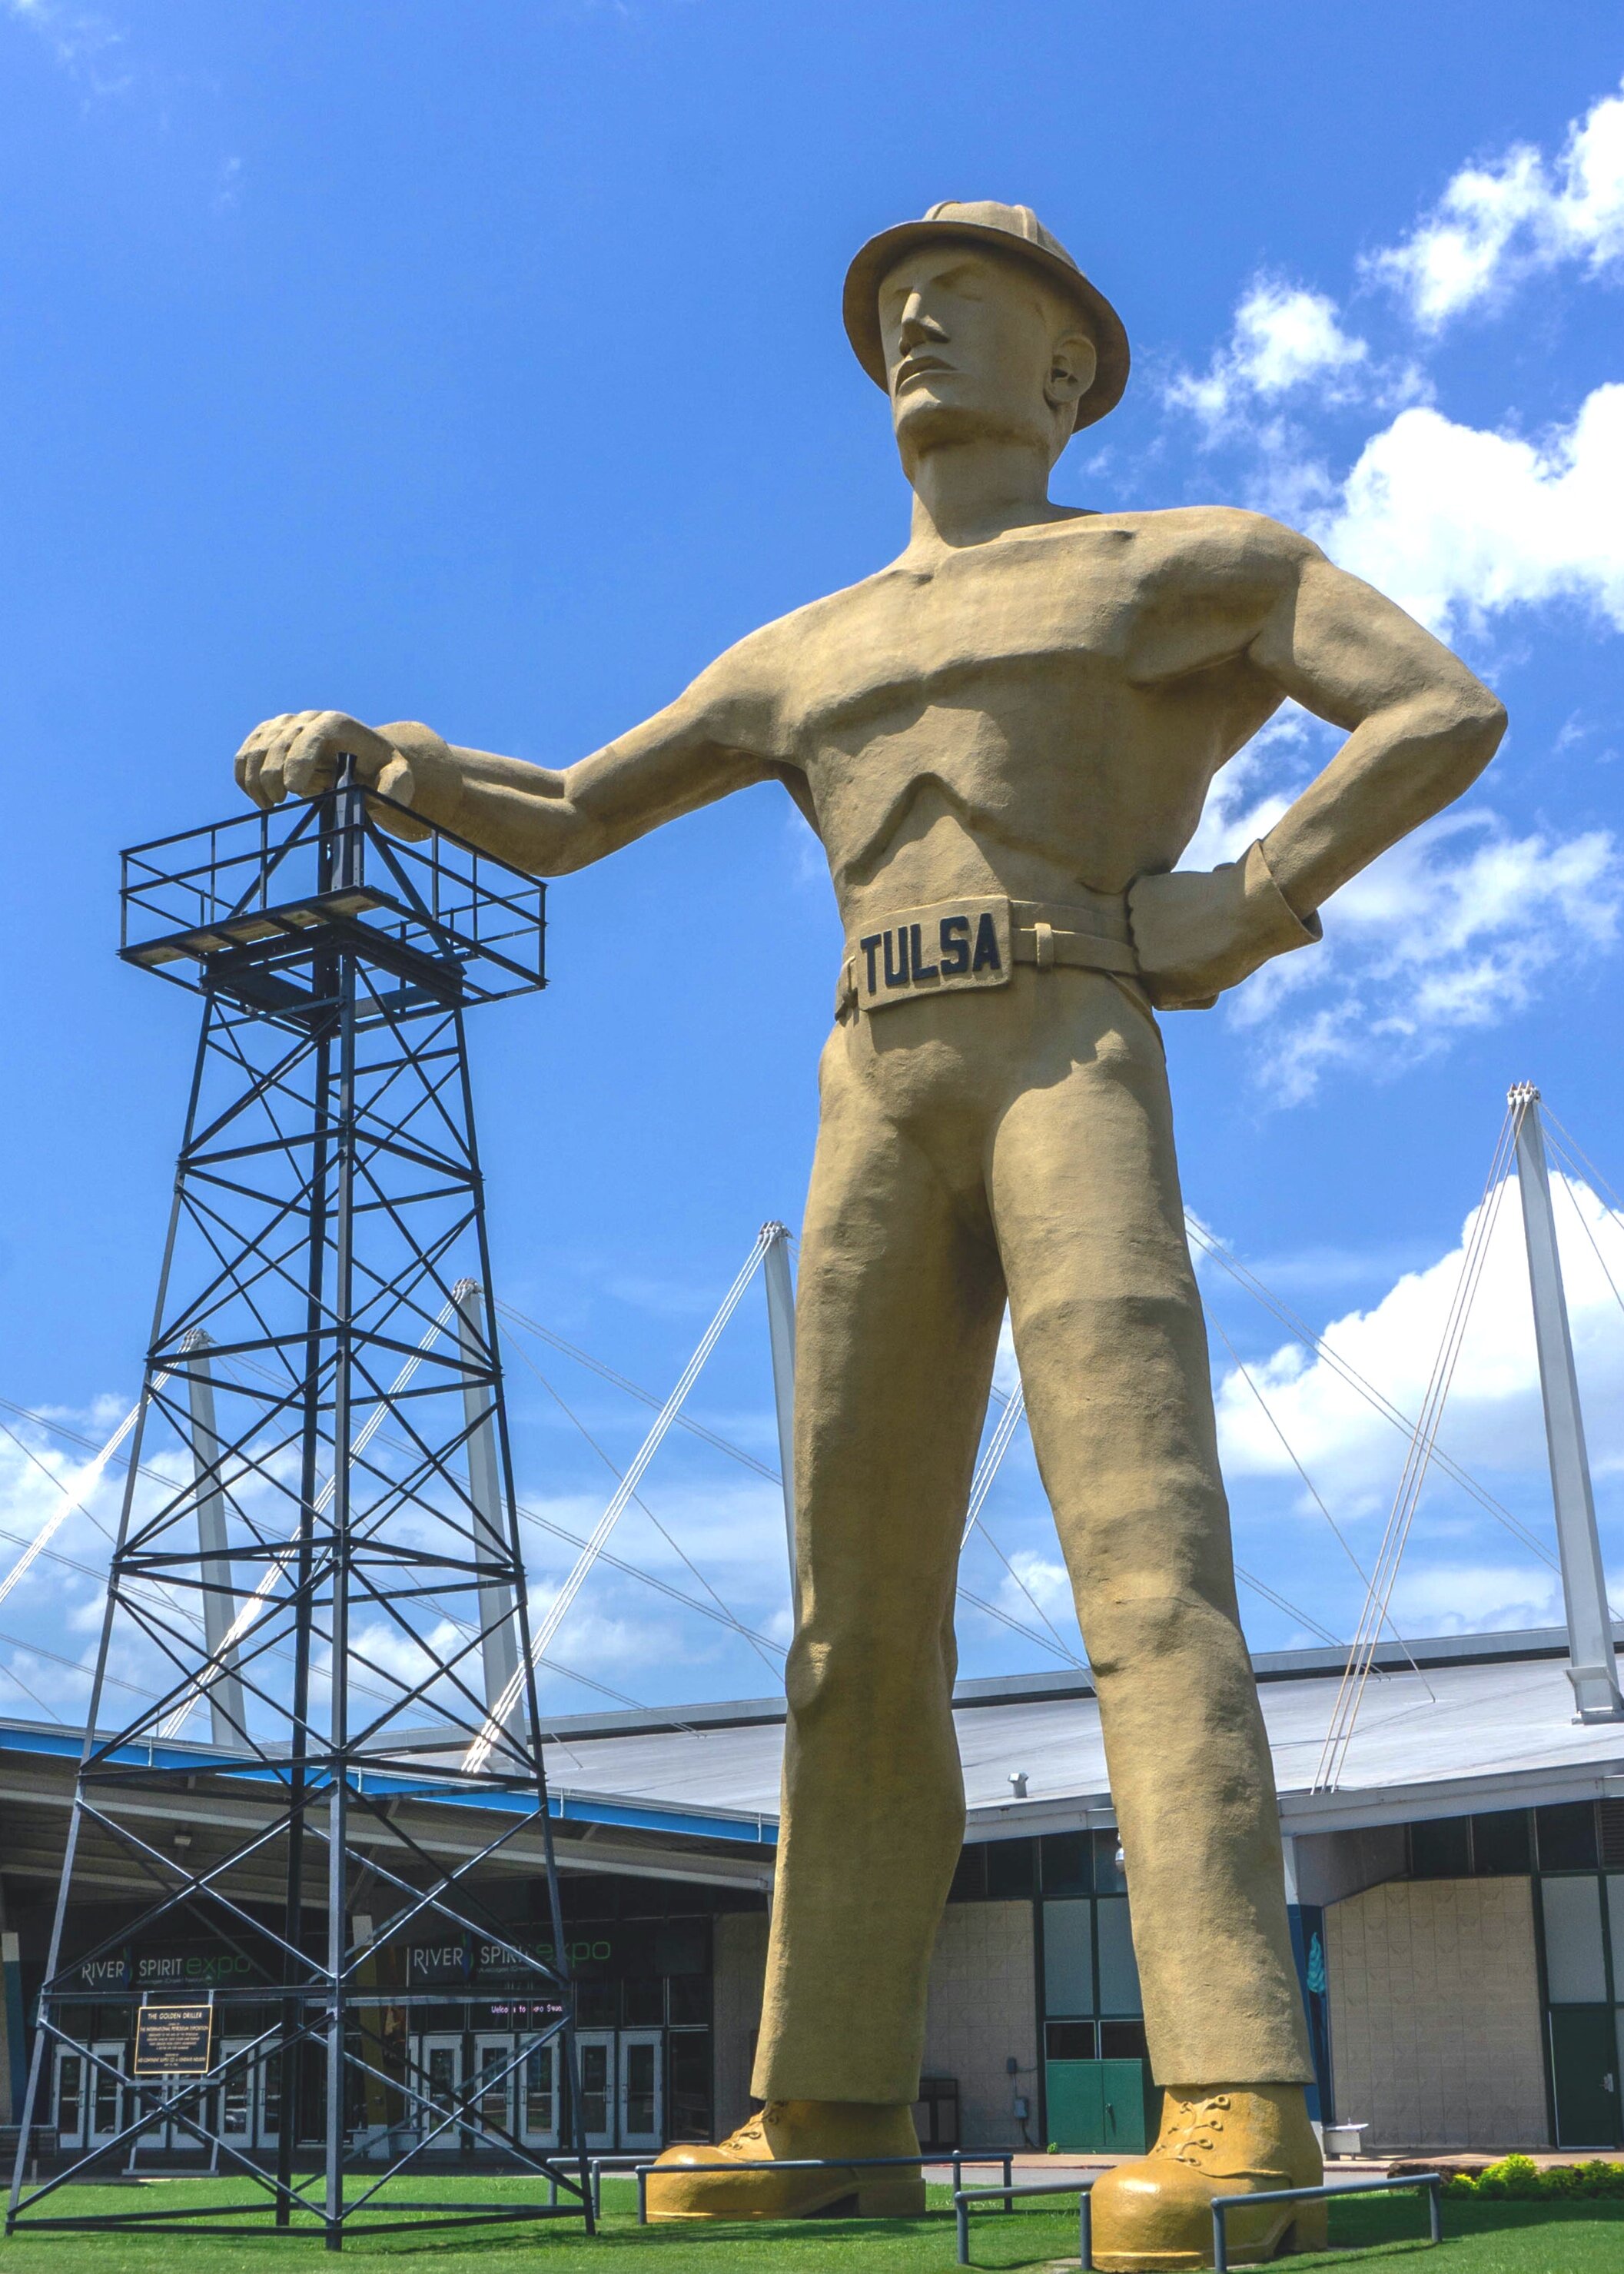 Tulsa Oil Man